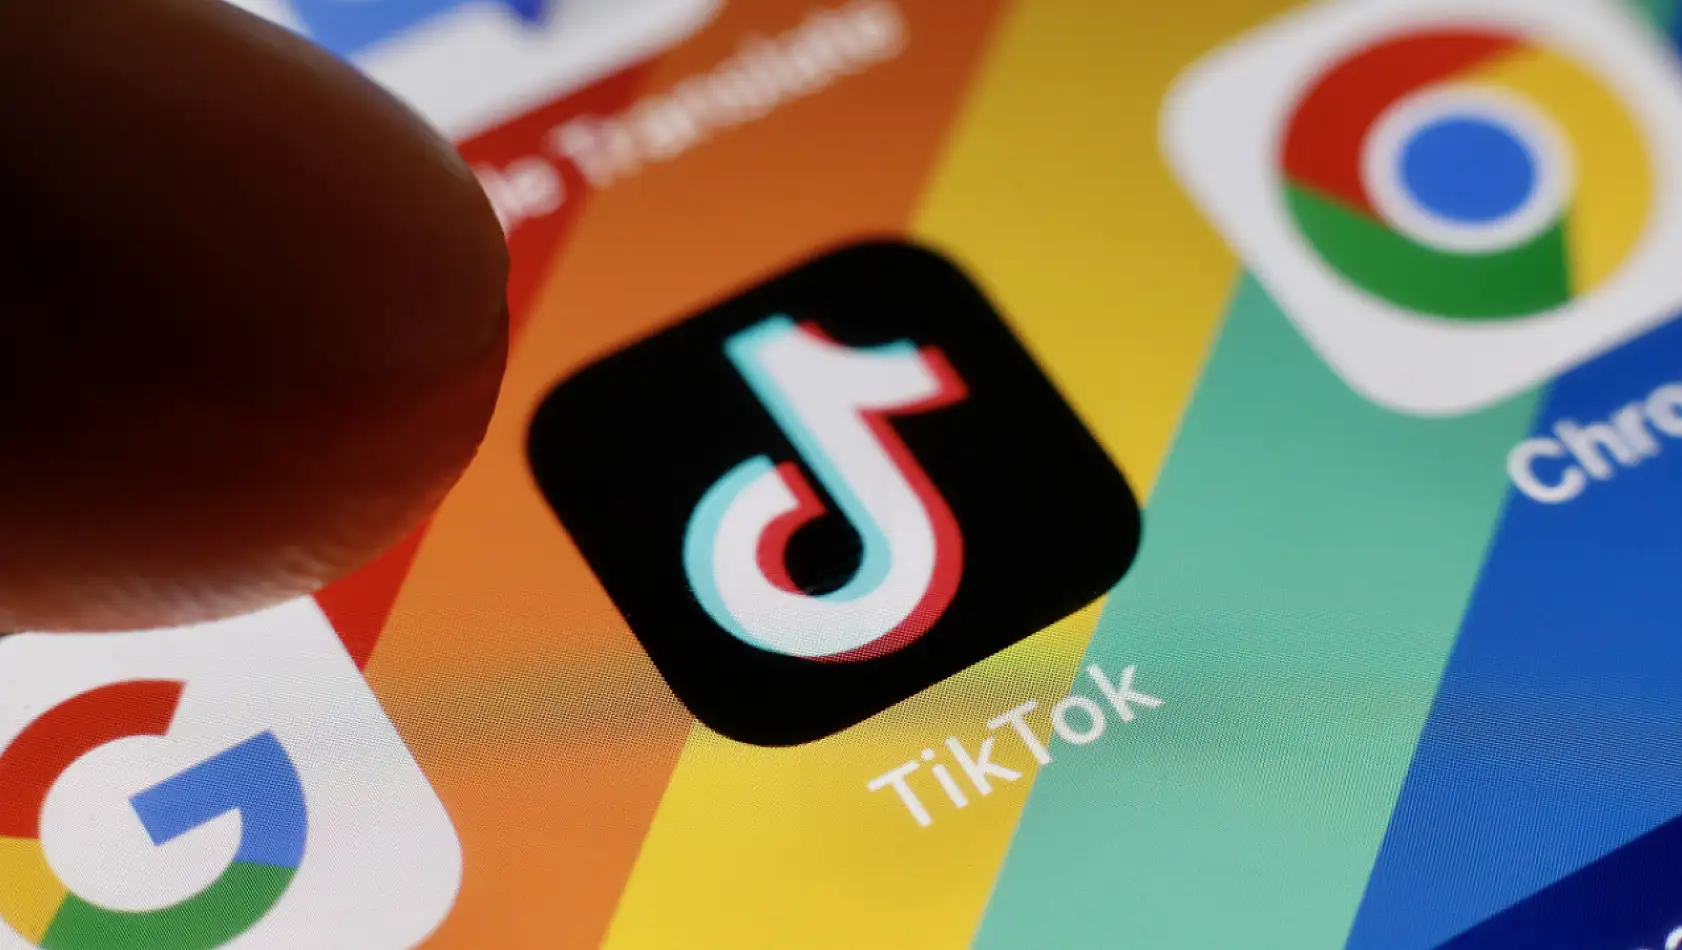 Kayseri'de de binlerce kullanıcısı var! TikTok yasaklanıyor mu?